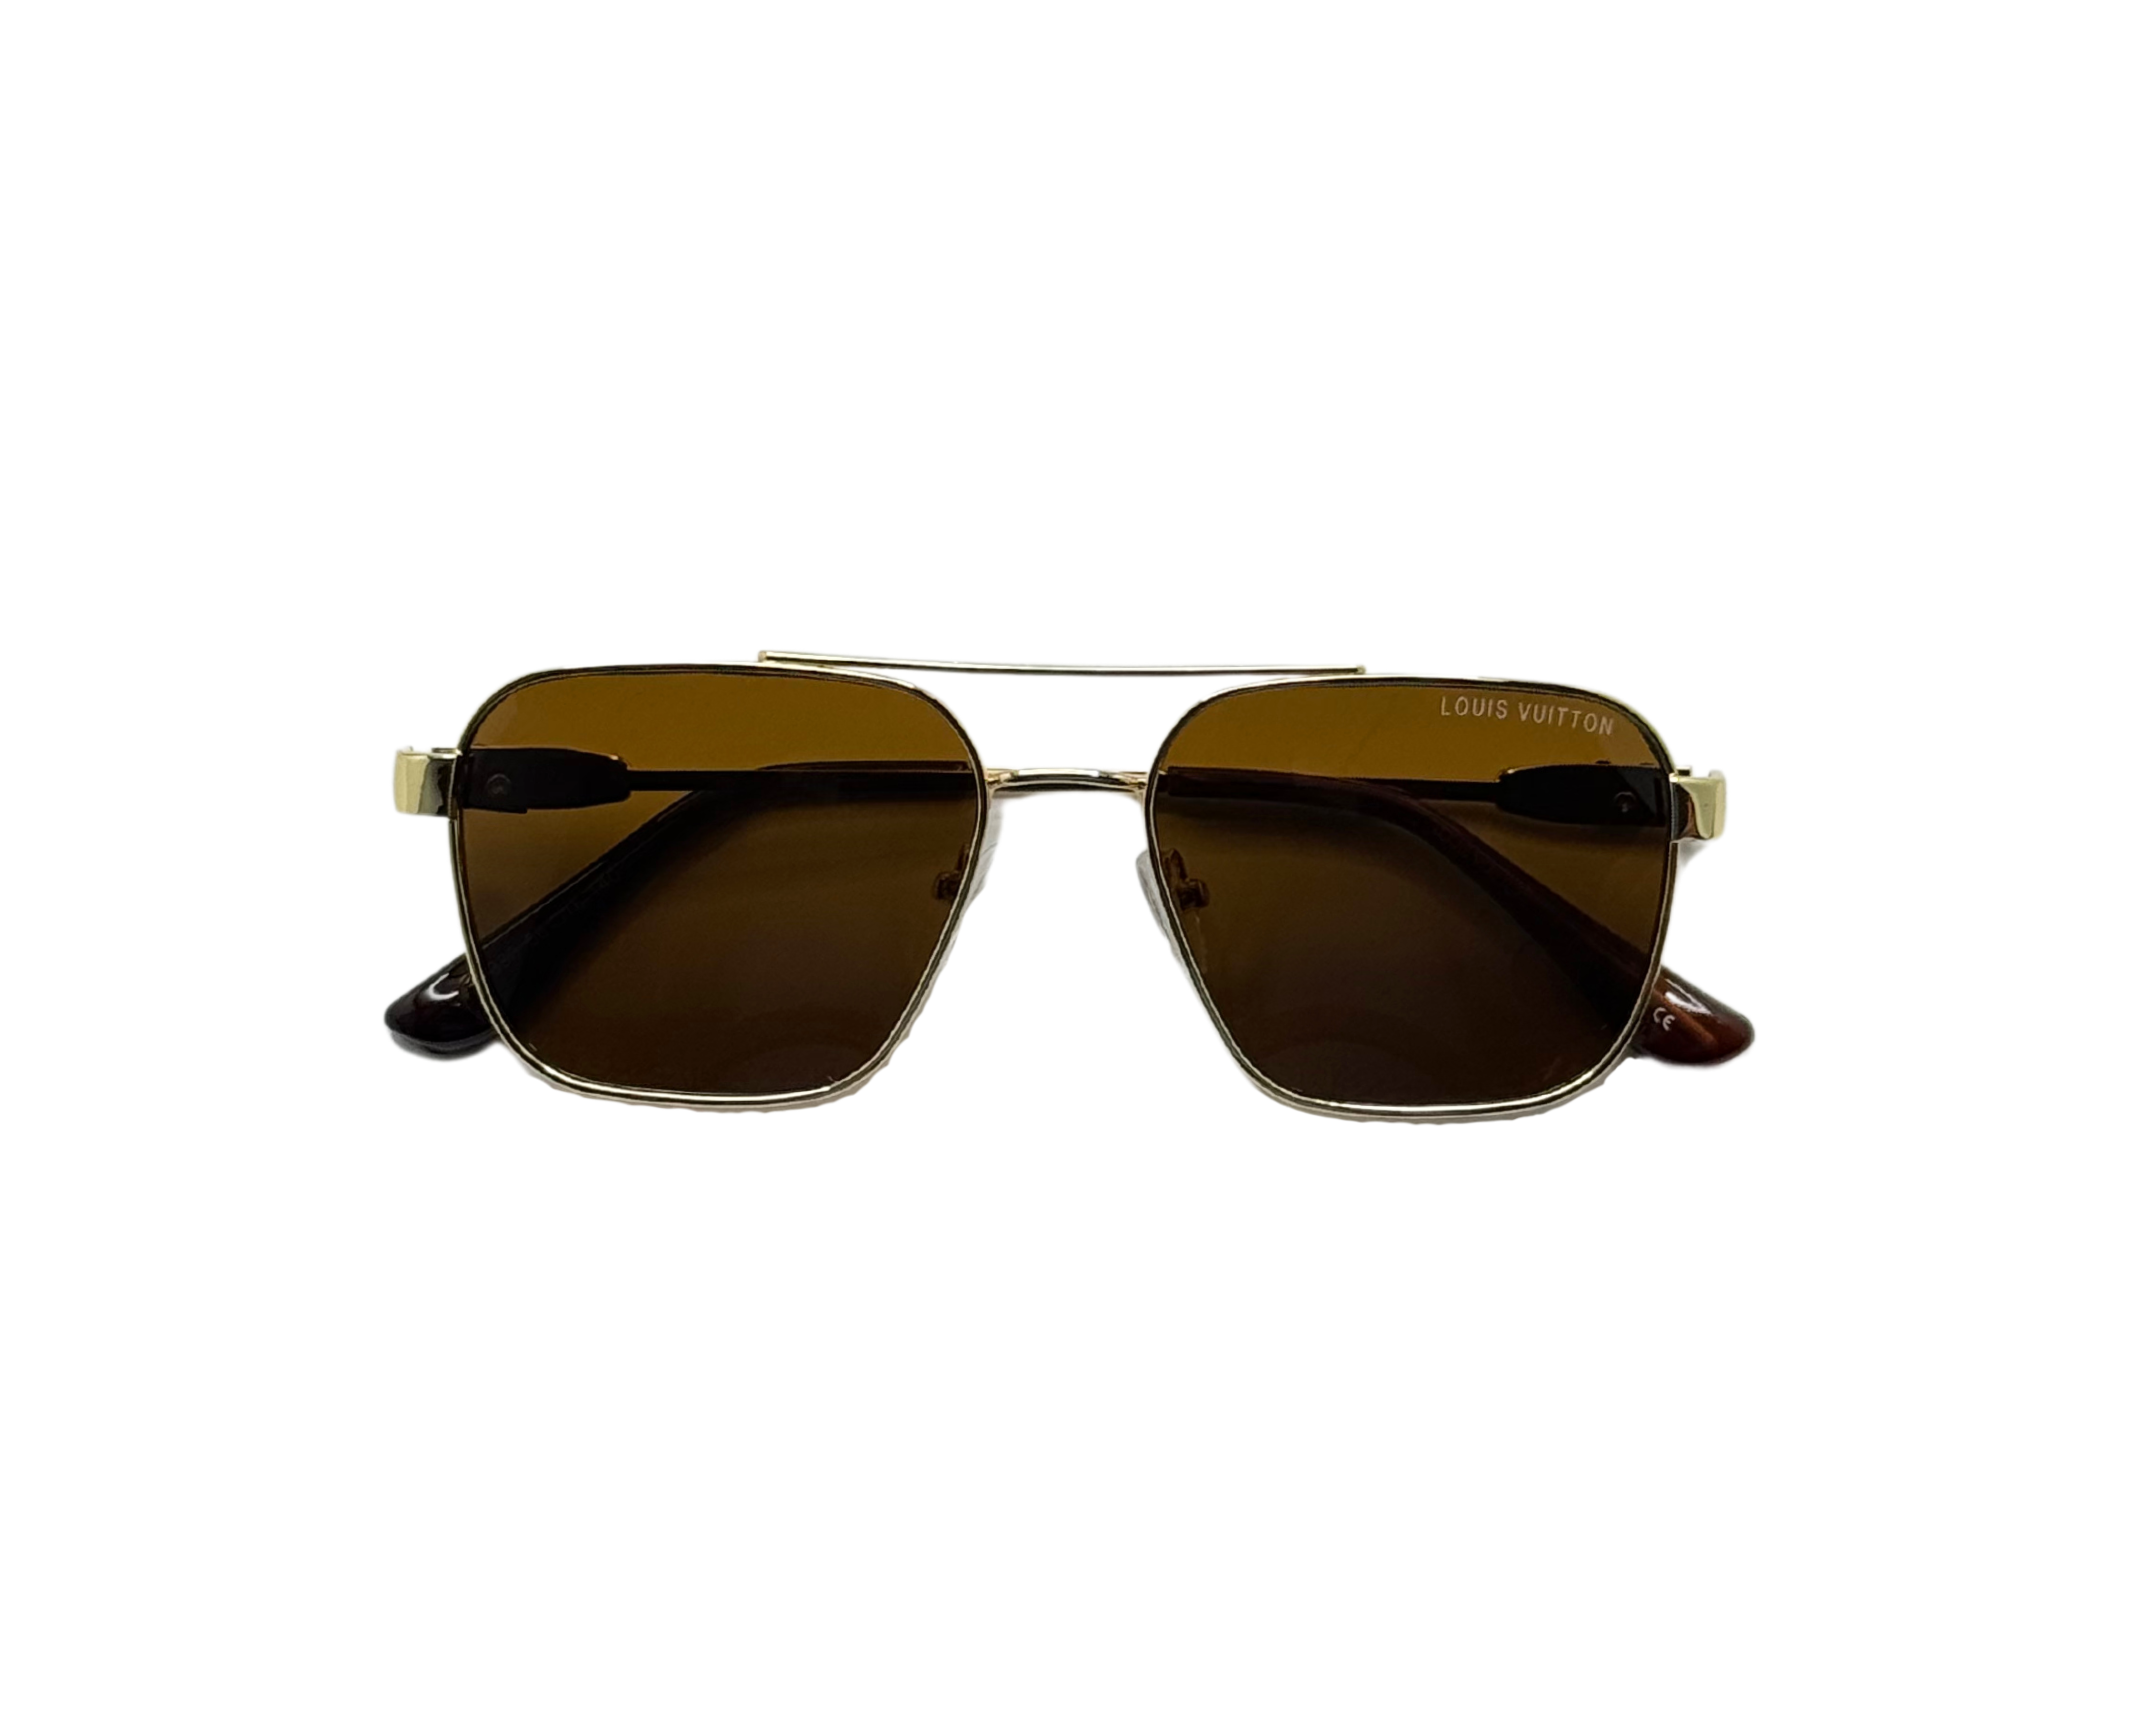 NS Deluxe - 330 - Golden - Sunglasses